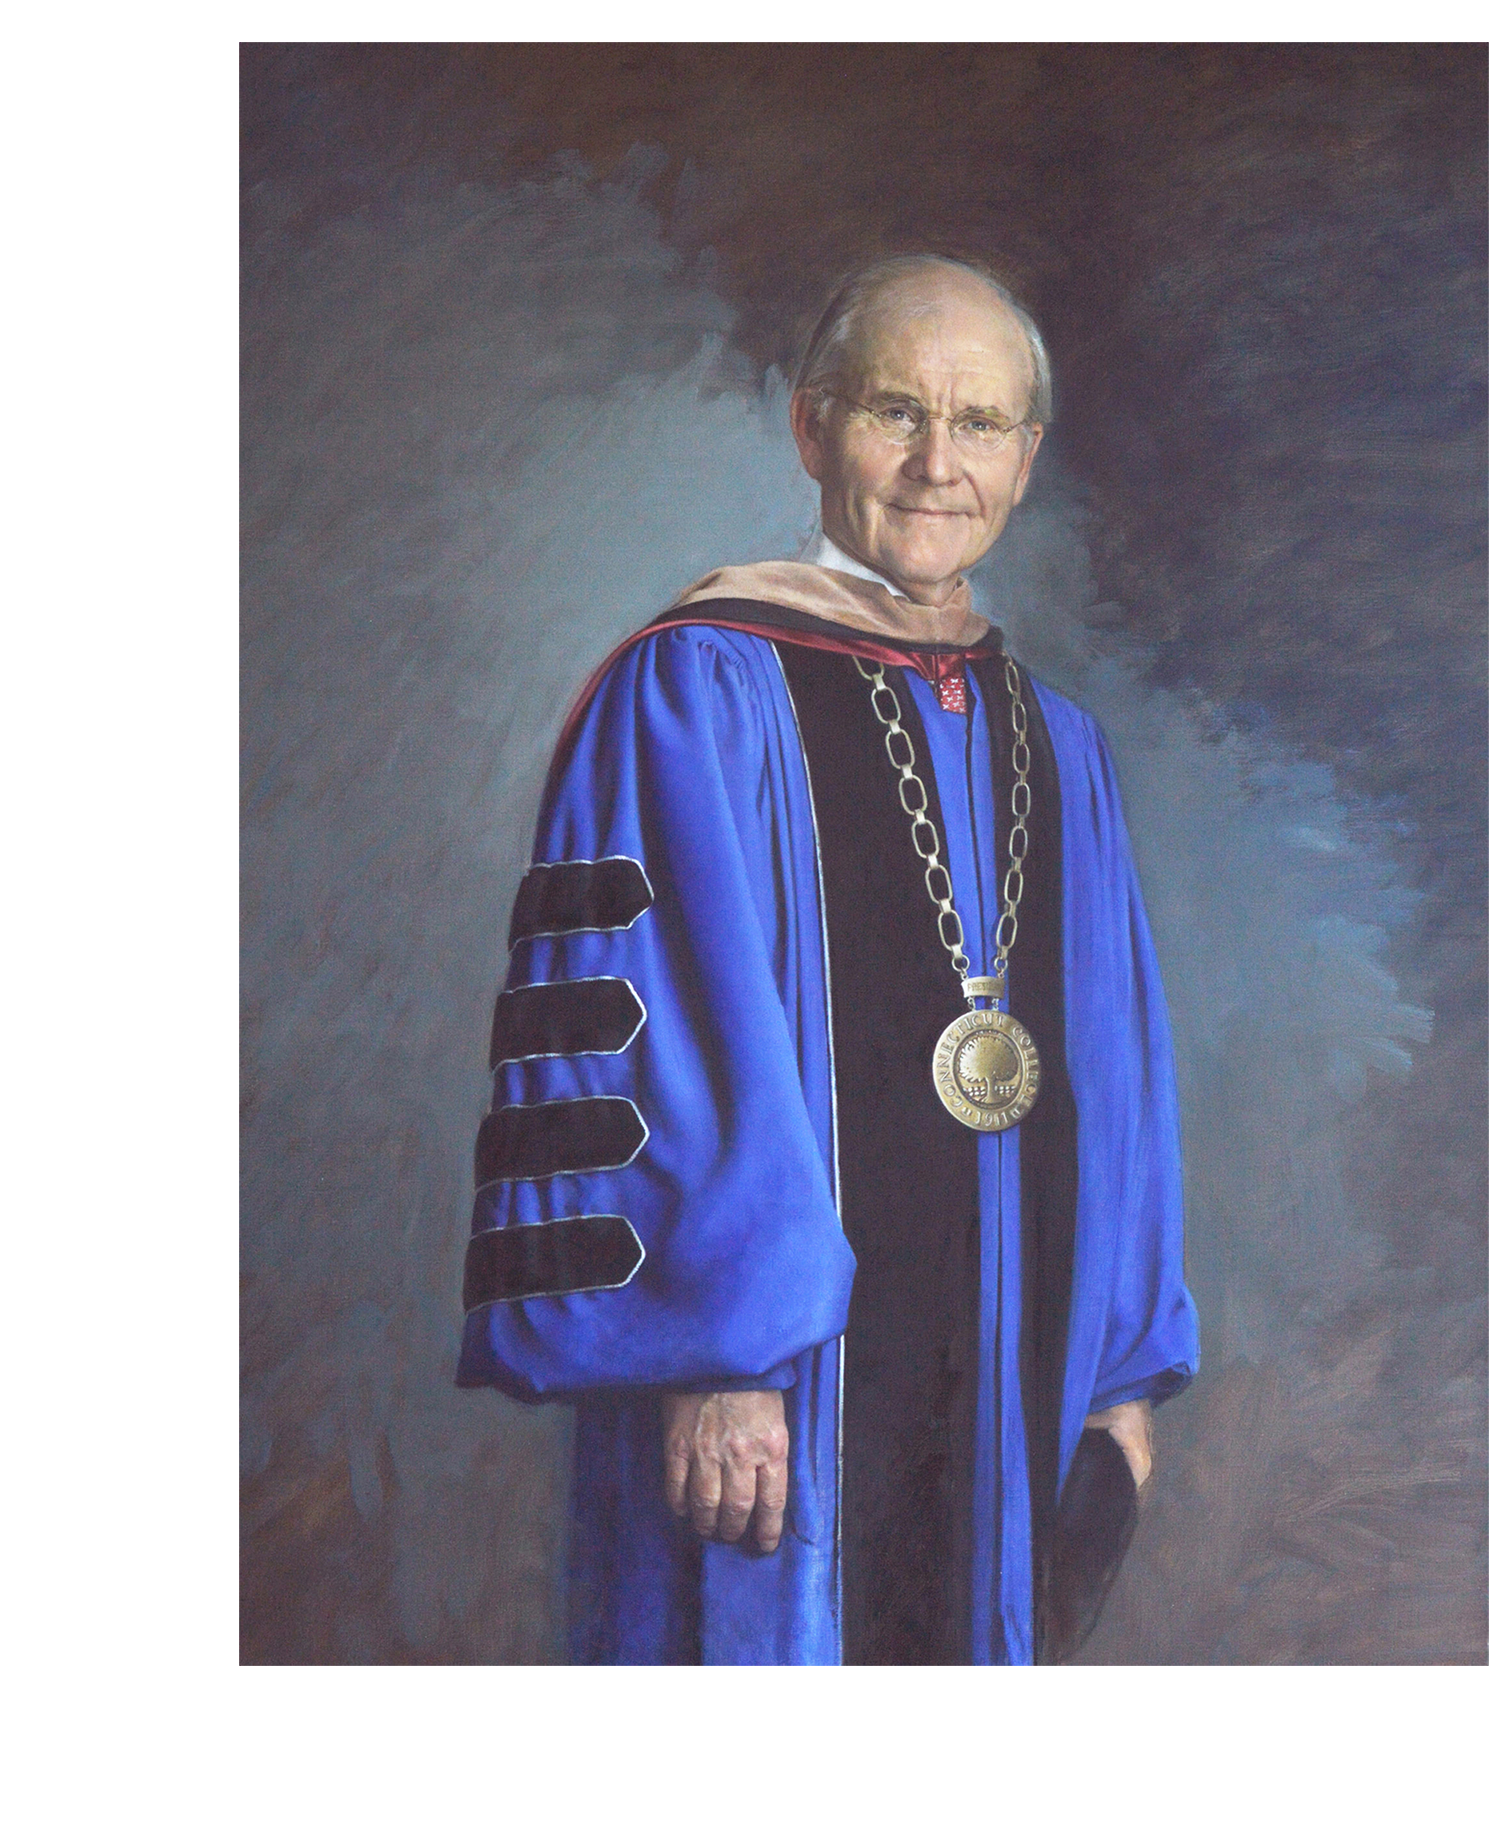 Dr. Lee Higdon, President Emeritus, Connecticut College